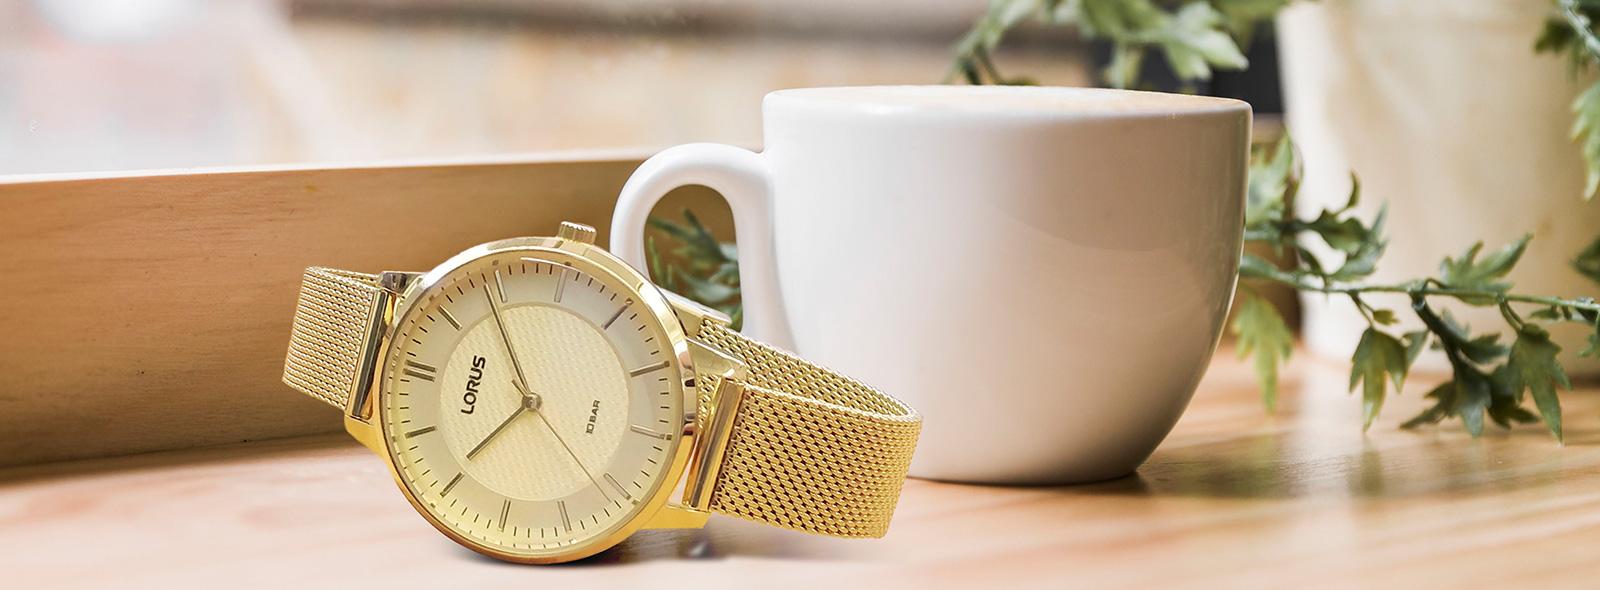 Złoty zegarek - damski dodatek w eleganckim wydaniu | Zegarownia.pl Blog